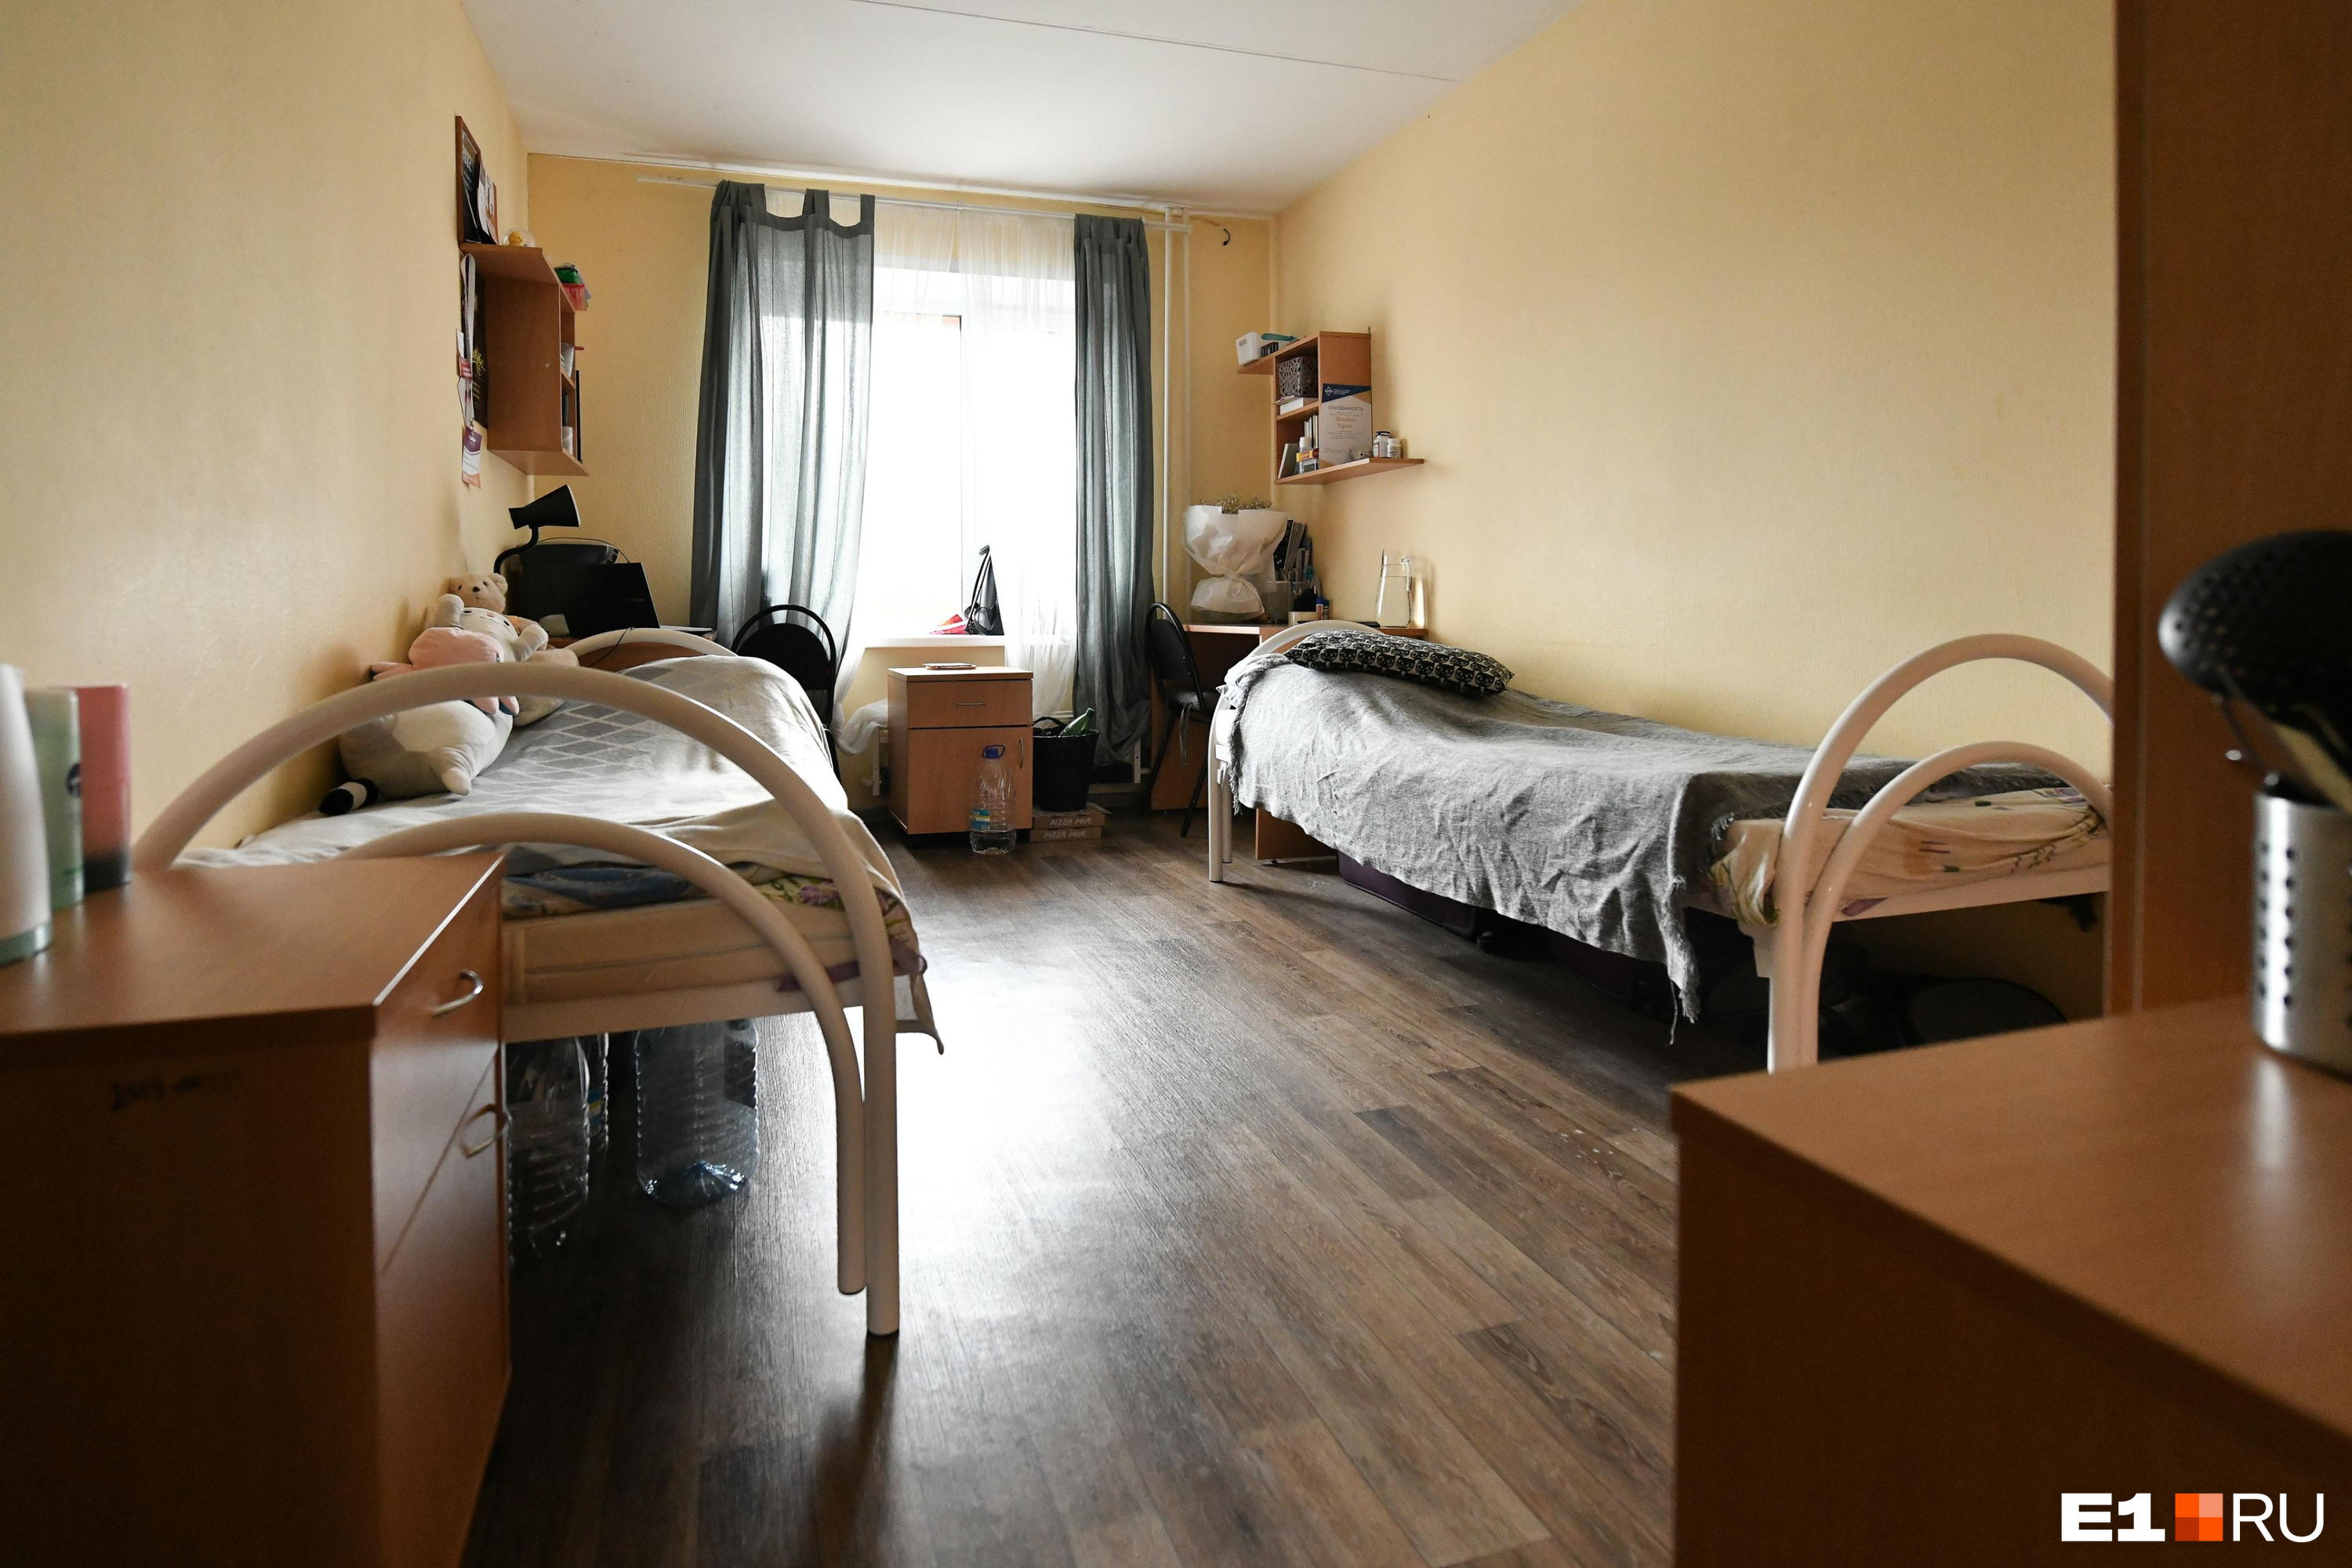 Общежитие для переселенцев из других стран построят в Кемерове: каким оно будет